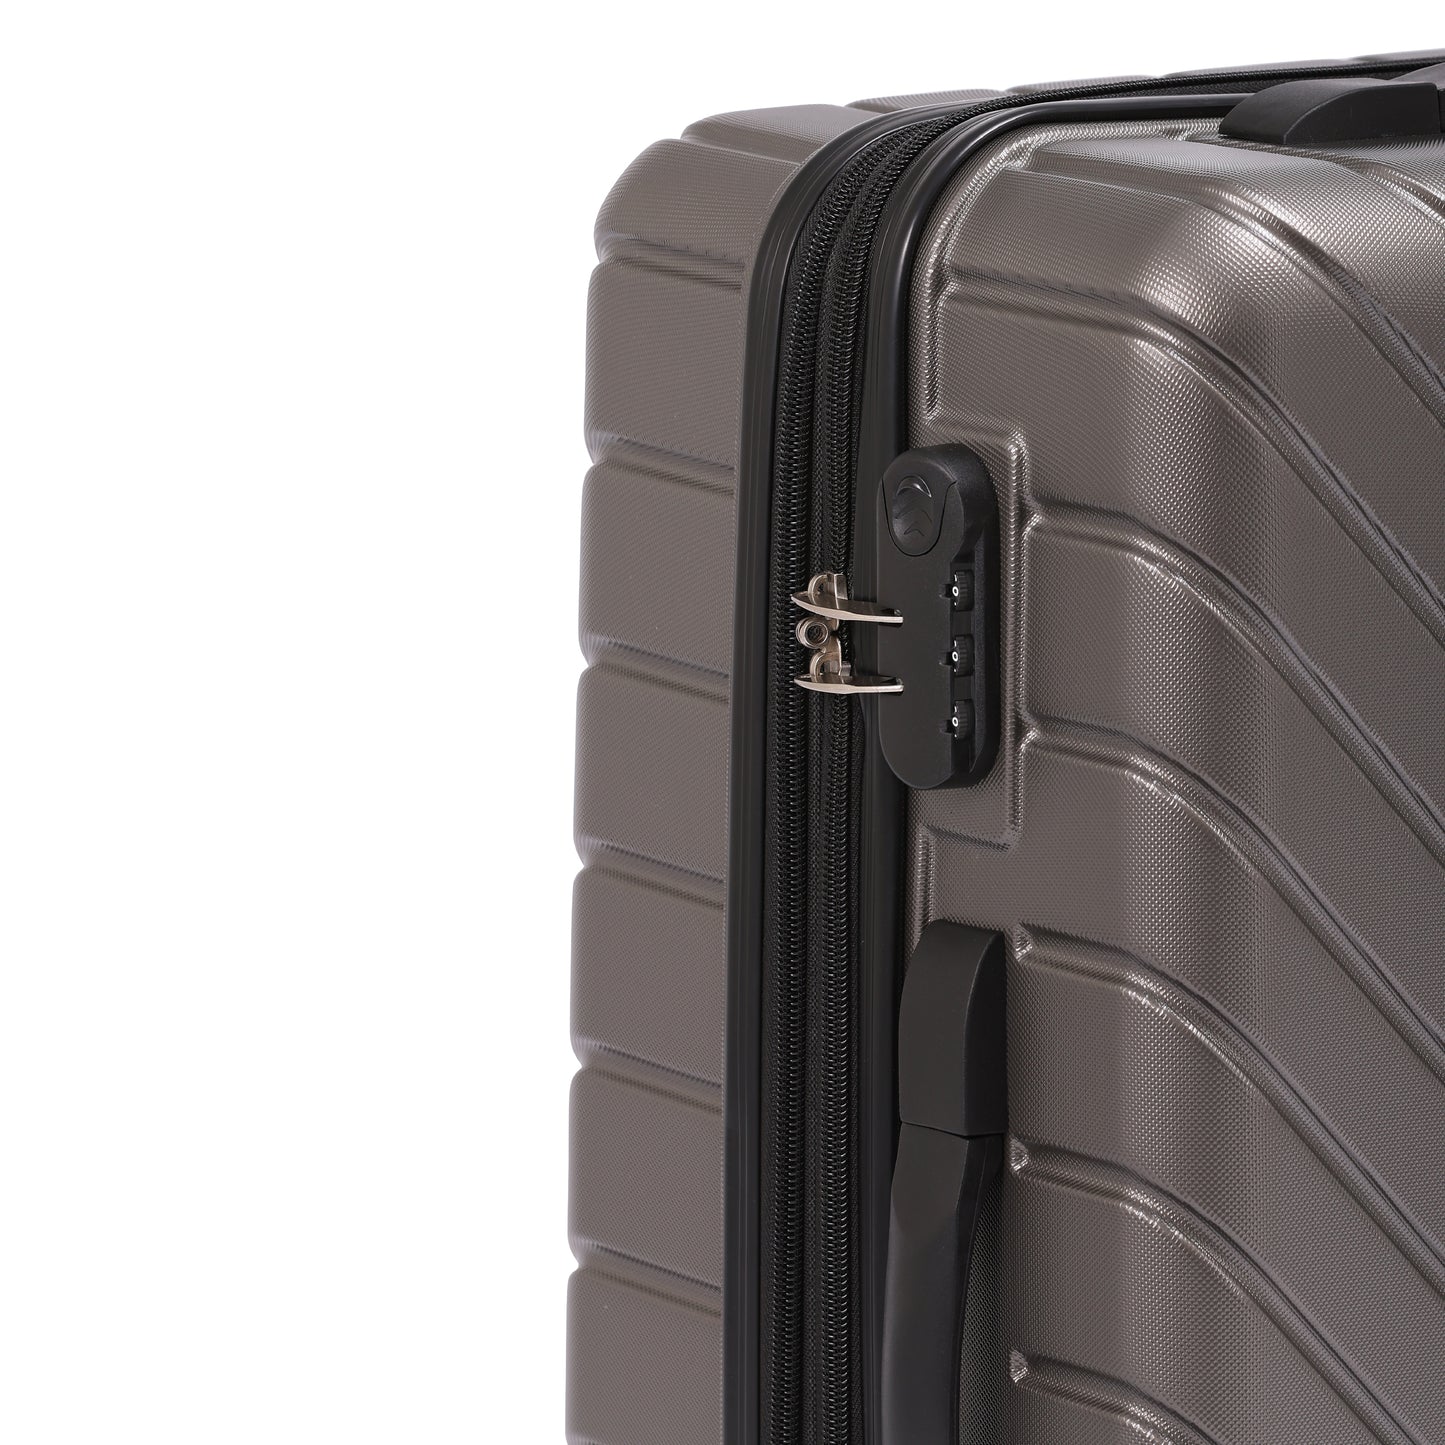 Cosmo Galaxy 4W 60 cm Hard Luggage Trolley Case